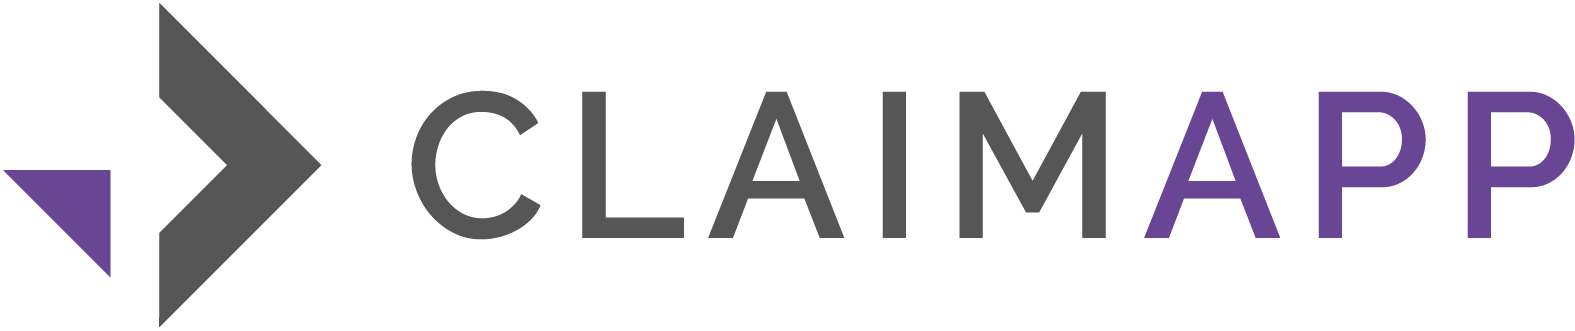 Claimapp logo